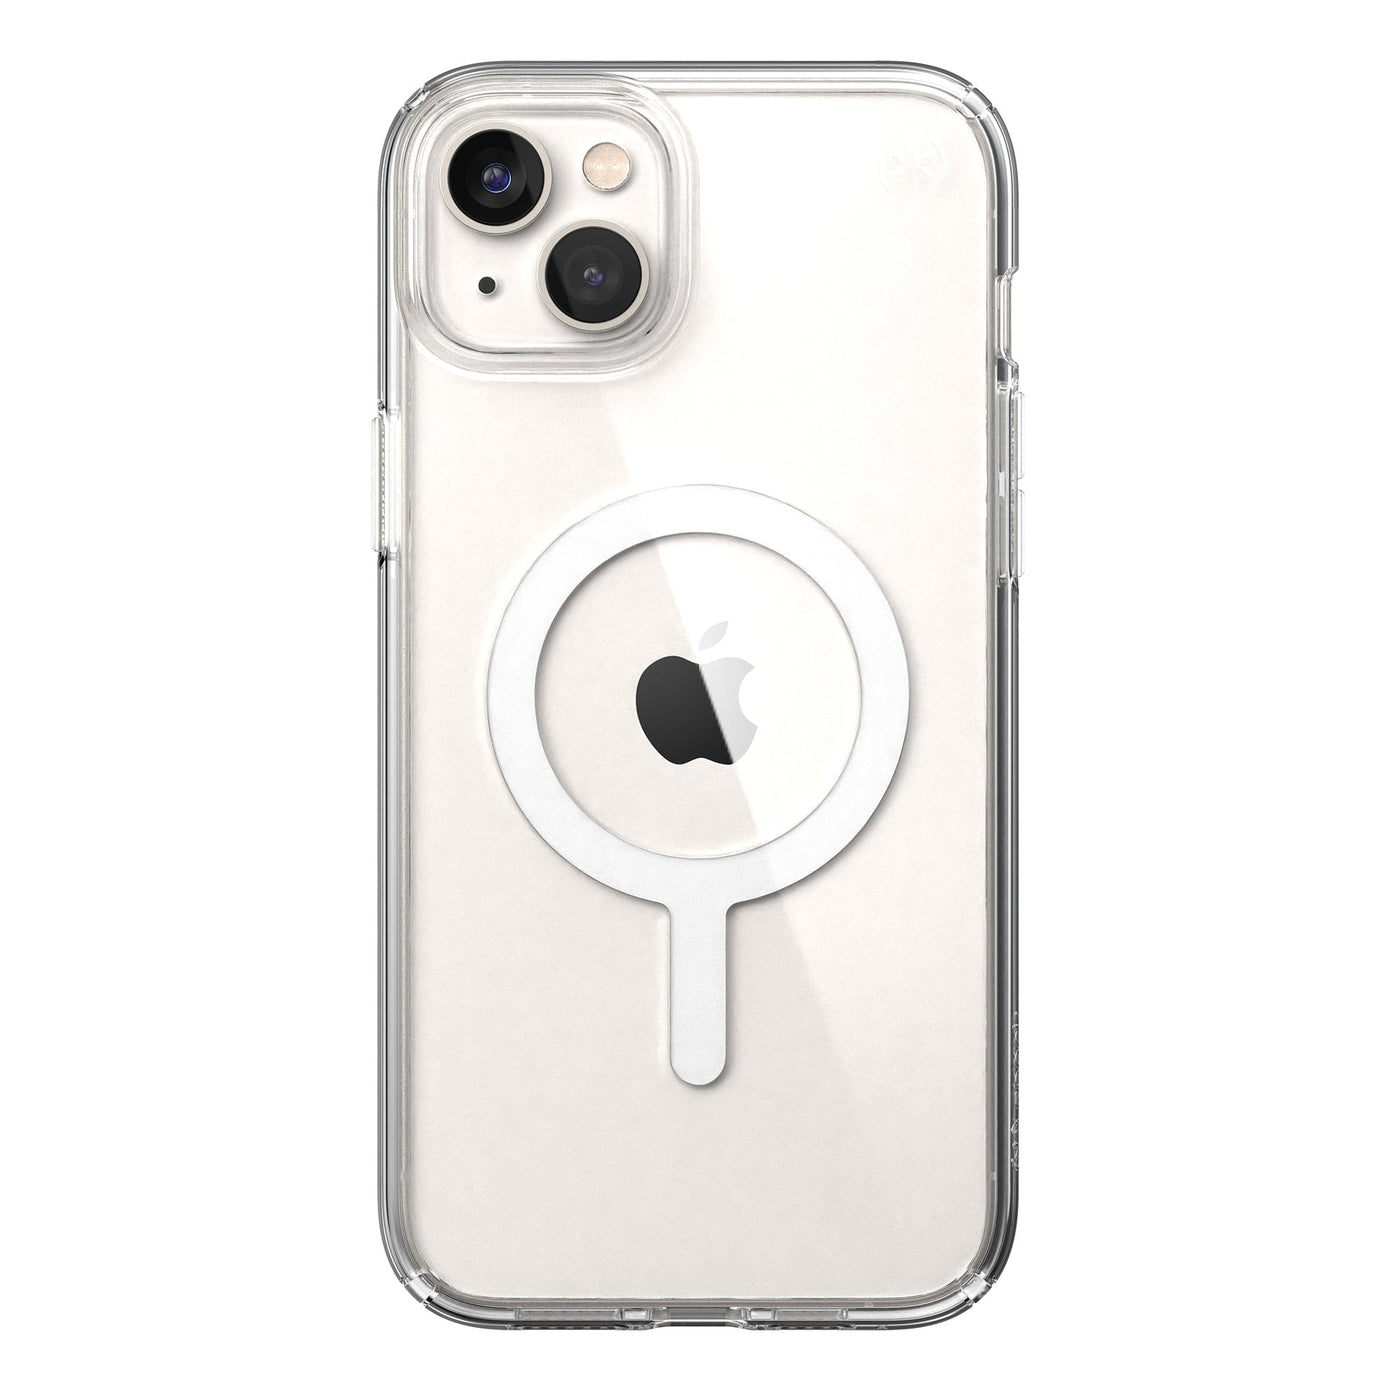 Funda iPhone 14 Pro MagSafe Transparente Speck